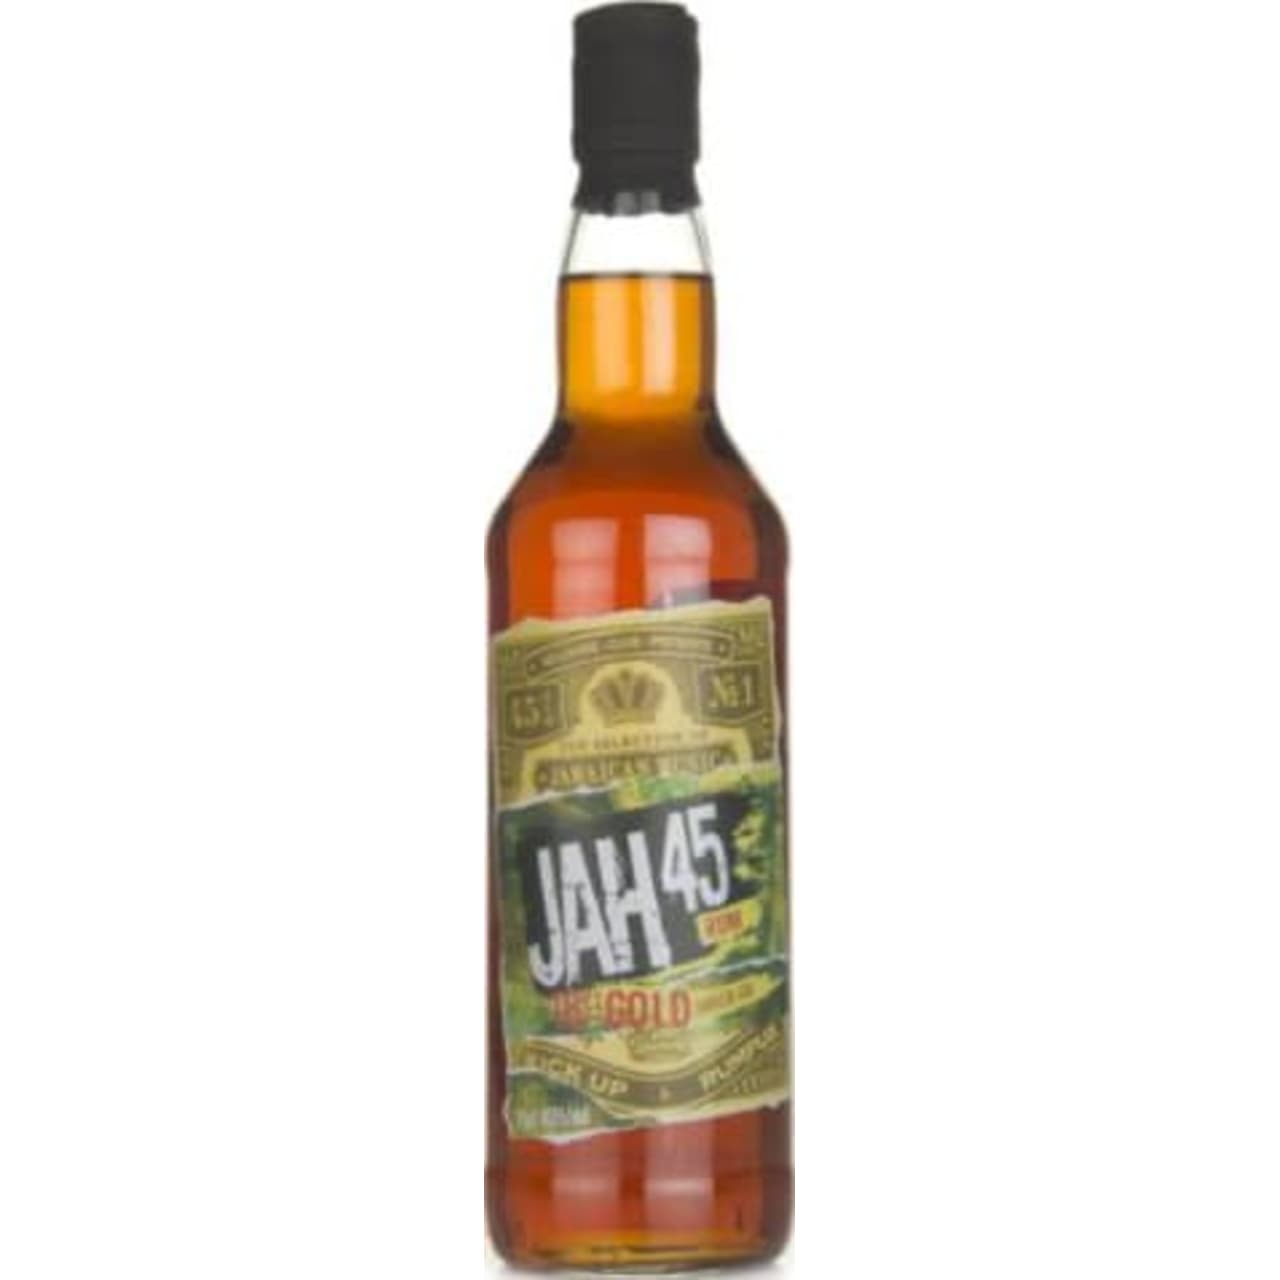 Product Image - JAH45 Dark Rum